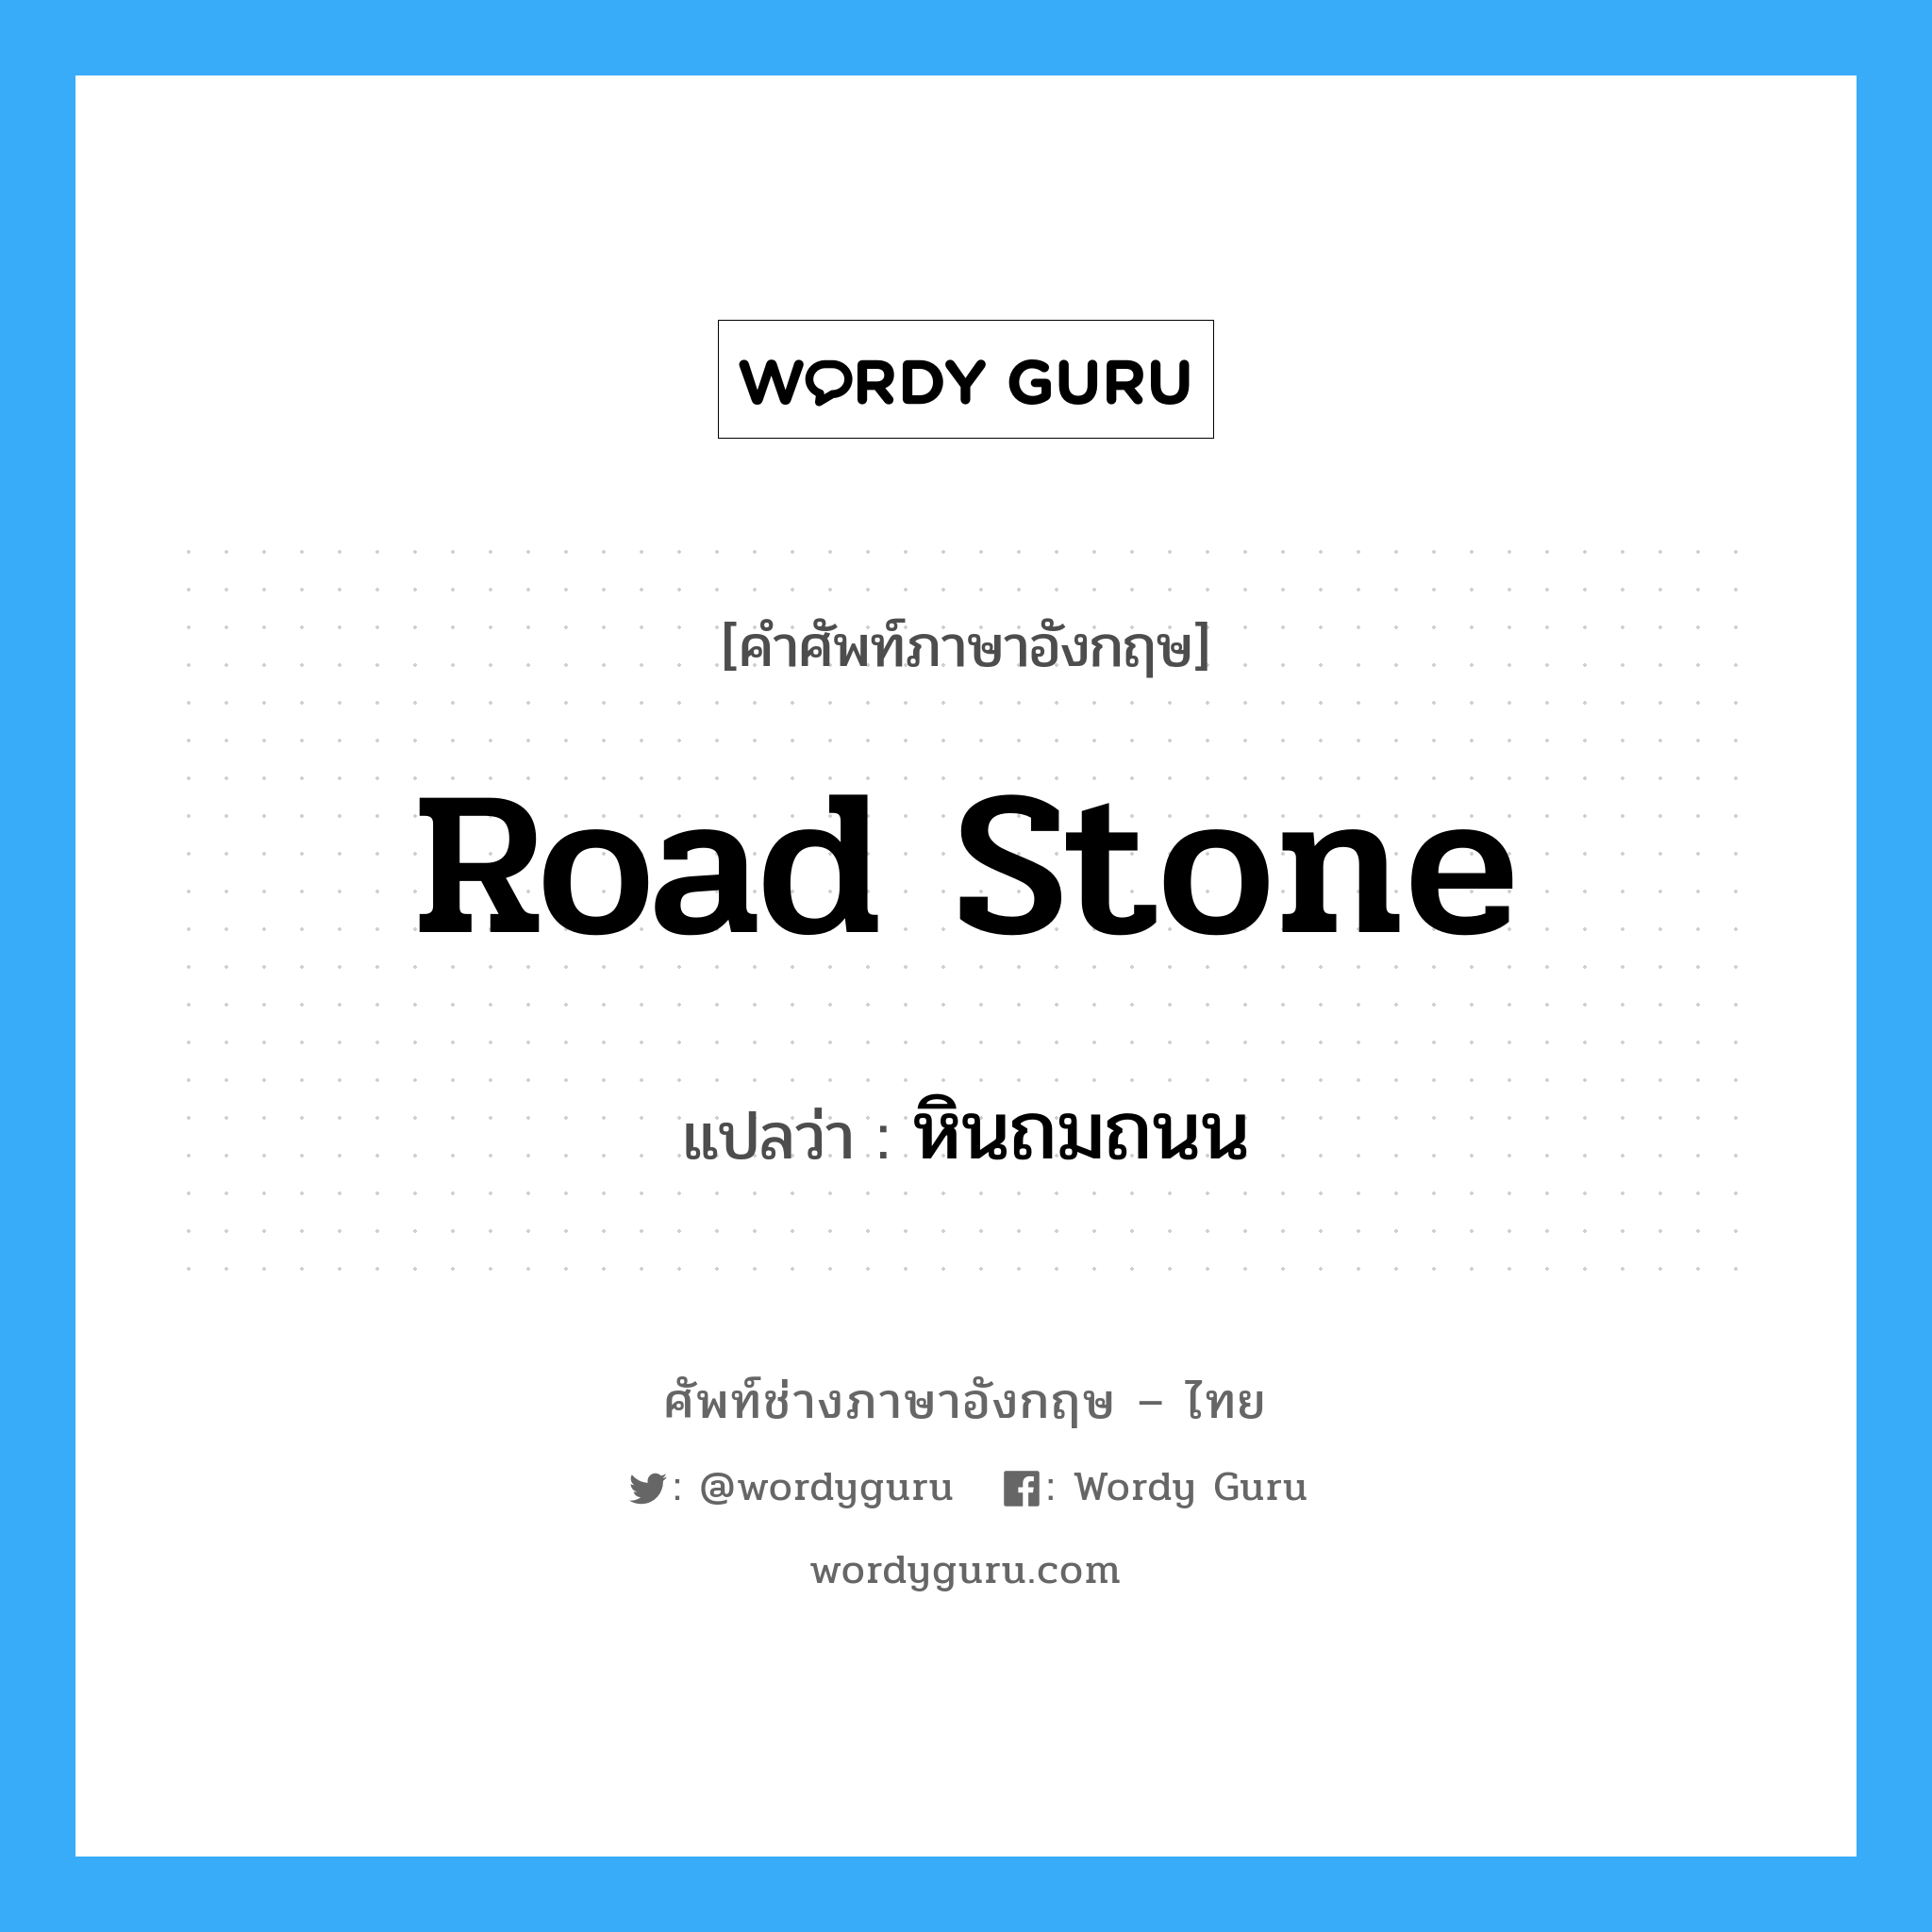 road stone แปลว่า?, คำศัพท์ช่างภาษาอังกฤษ - ไทย road stone คำศัพท์ภาษาอังกฤษ road stone แปลว่า หินถมถนน